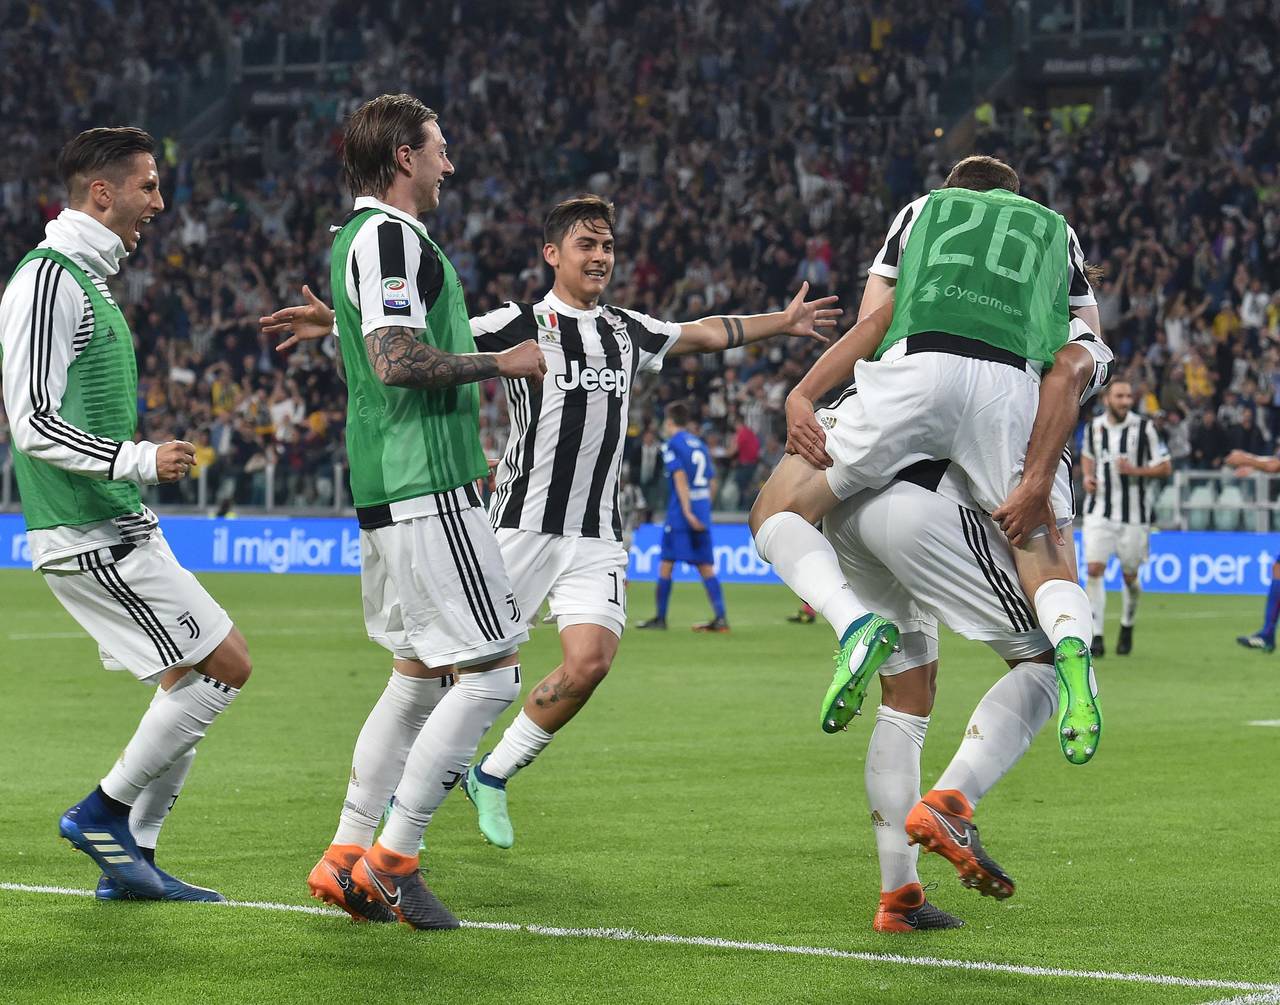 Los jugadores de Juventus celebran el segundo tanto, anotado por Sami Khedira en la victoria 3-1 sobre Bolonia. (AP)